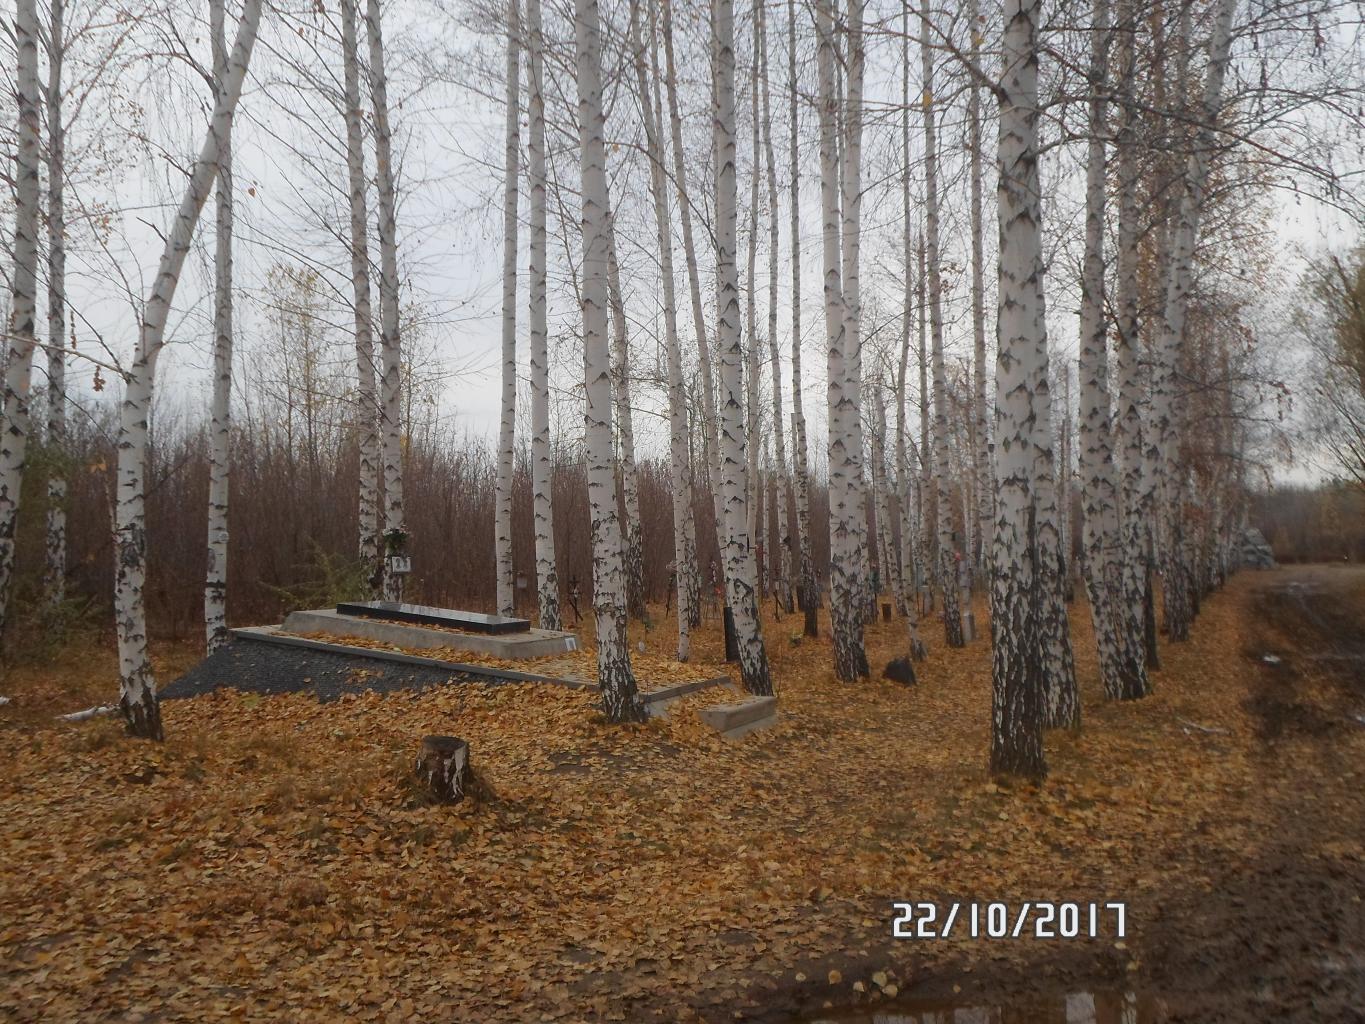 Монумент памяти репрессированных (Оренбург)